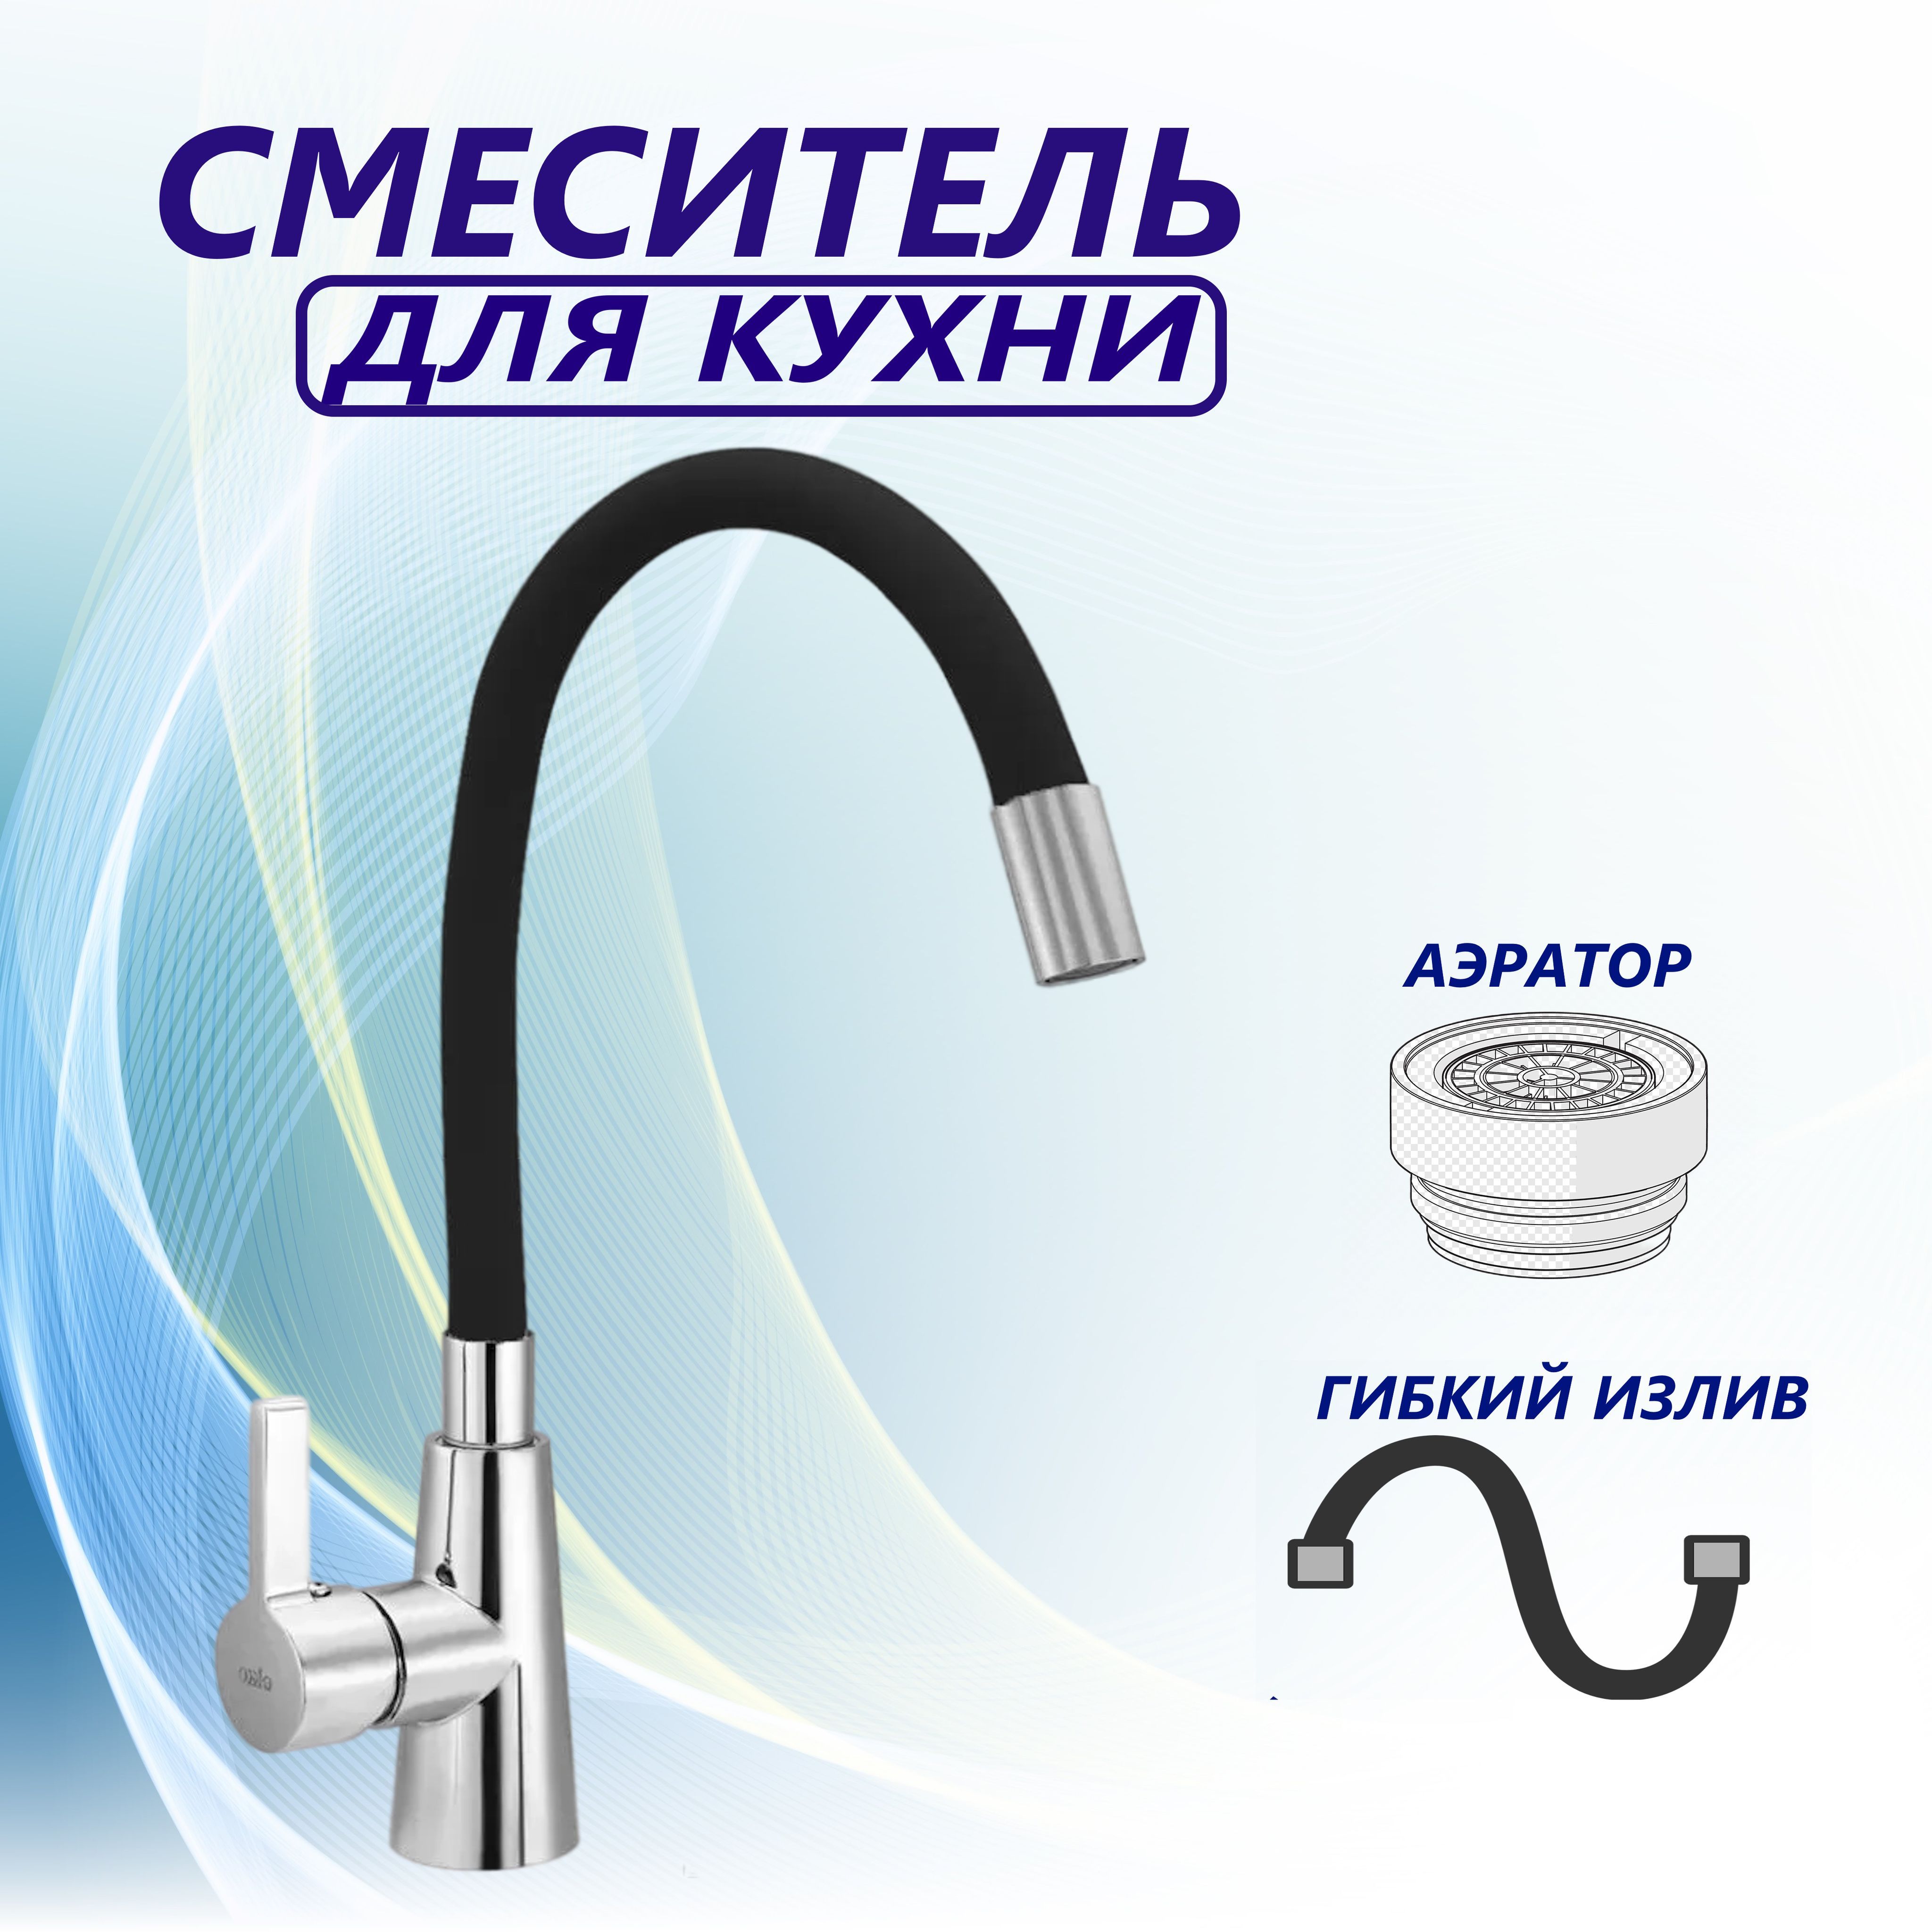 Смеситель с гибким изливом для кухни отзывы. Смеситель Amur Premium Mixers. Кухонный кран фирмы HIMARK. Amur Brass Mixers смеситель для кухни Китай. Гибкий шланг на мойку на смеситель на кухню бежевый.